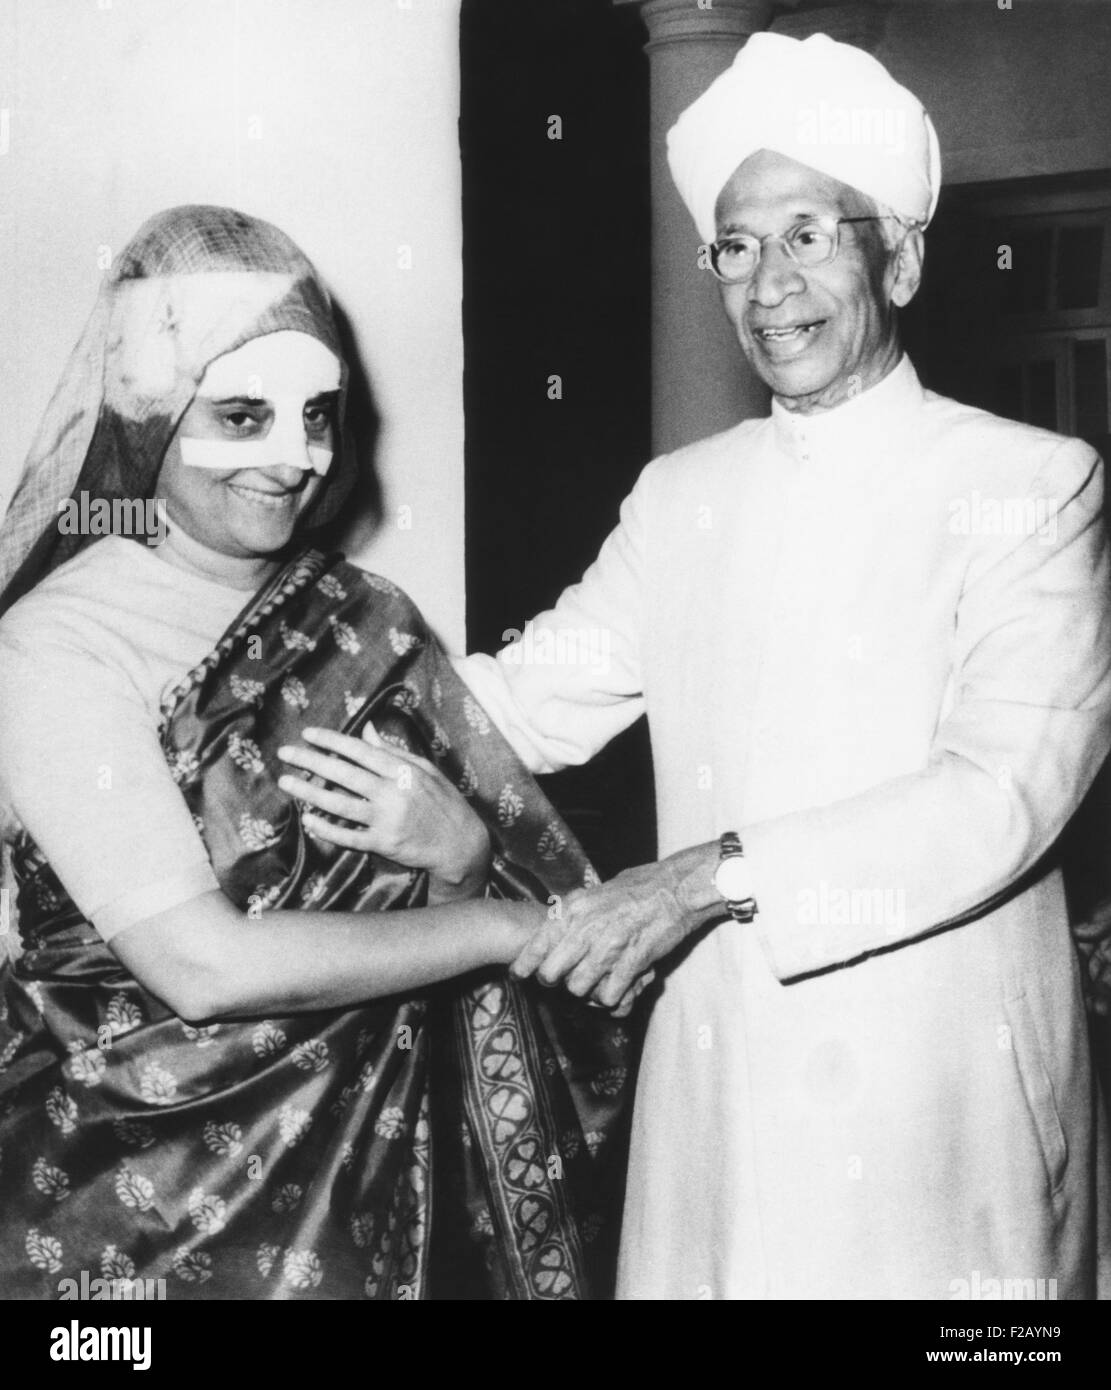 Premierministerin Indira Gandhi, ihre Nase stark bandagiert, erholt sich bei ihr zu Hause. Indiens Präsident, Dr. Sarvepalli Radhakrishnan, besucht ihr am 13. Februar 1967. Ein Steinwurf ein Zwischenrufer während einer Kundgebung der Kampagne fiel Mrs Gandhi. (CSU 2015 9 729) Stockfoto